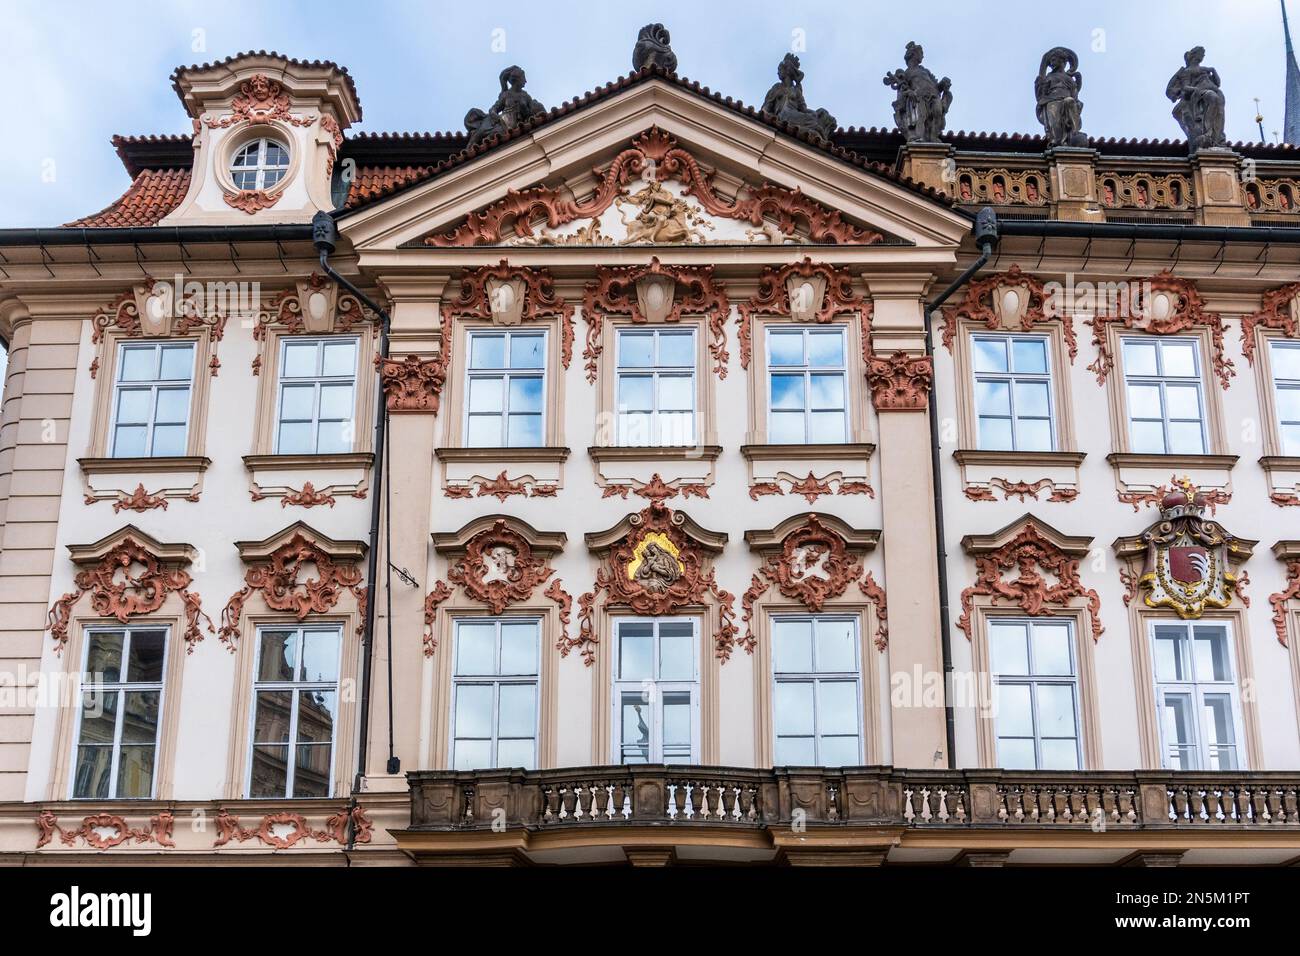 Dettaglio architettonico di un edificio storico nel centro di Praga, Praga, Repubblica Ceca Foto Stock